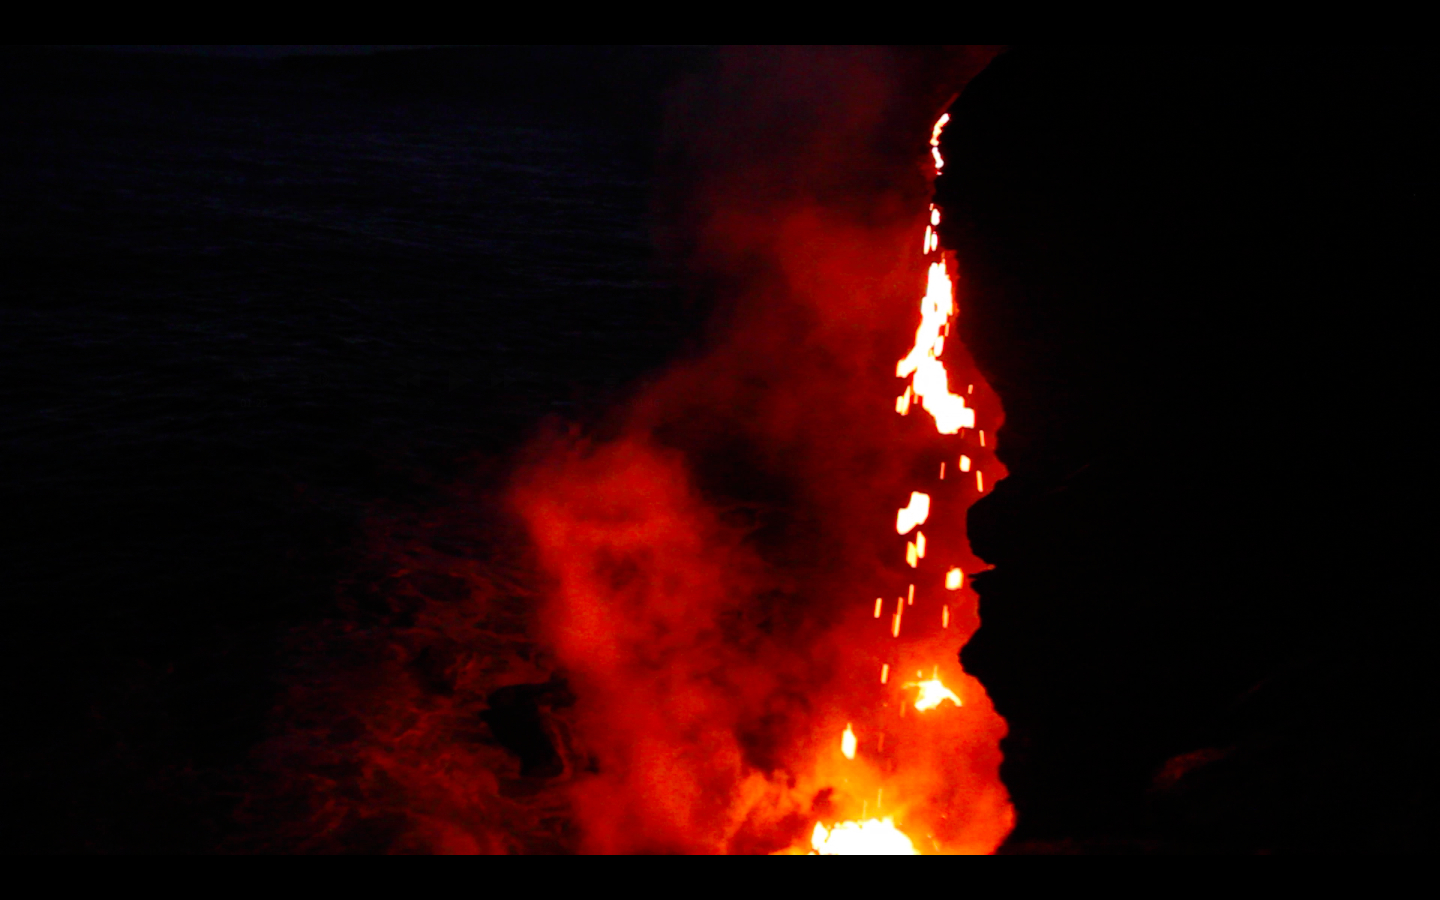 Kīlauea volcano (Hawai'i), activity update: new ocean entry